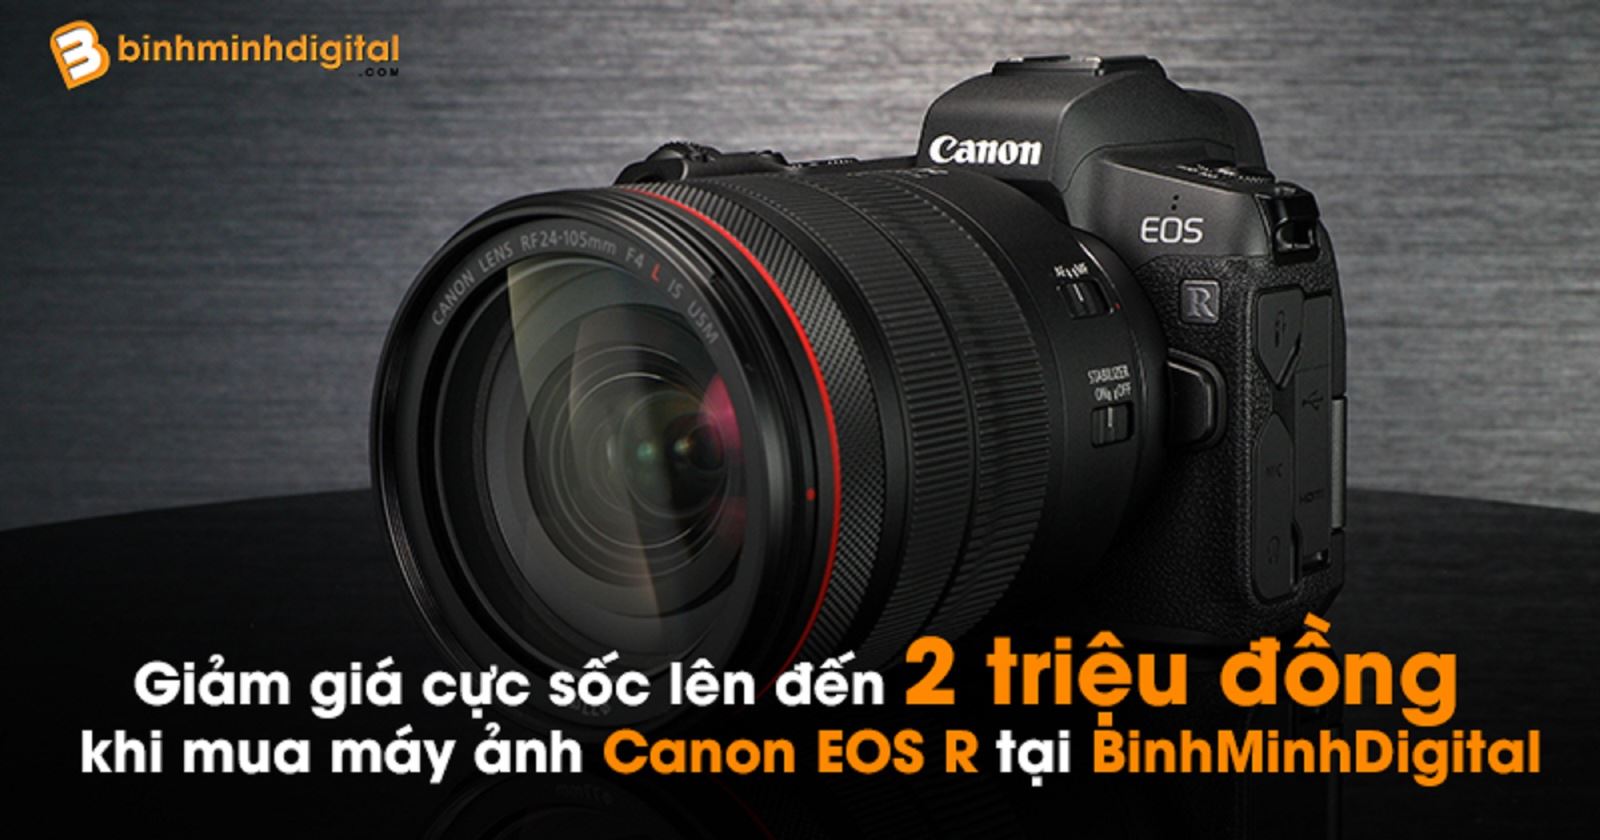 Giảm giá cực sốc lên đến 2 triệu đồng khi mua máy ảnh Canon EOS R tại BinhMinhDigital